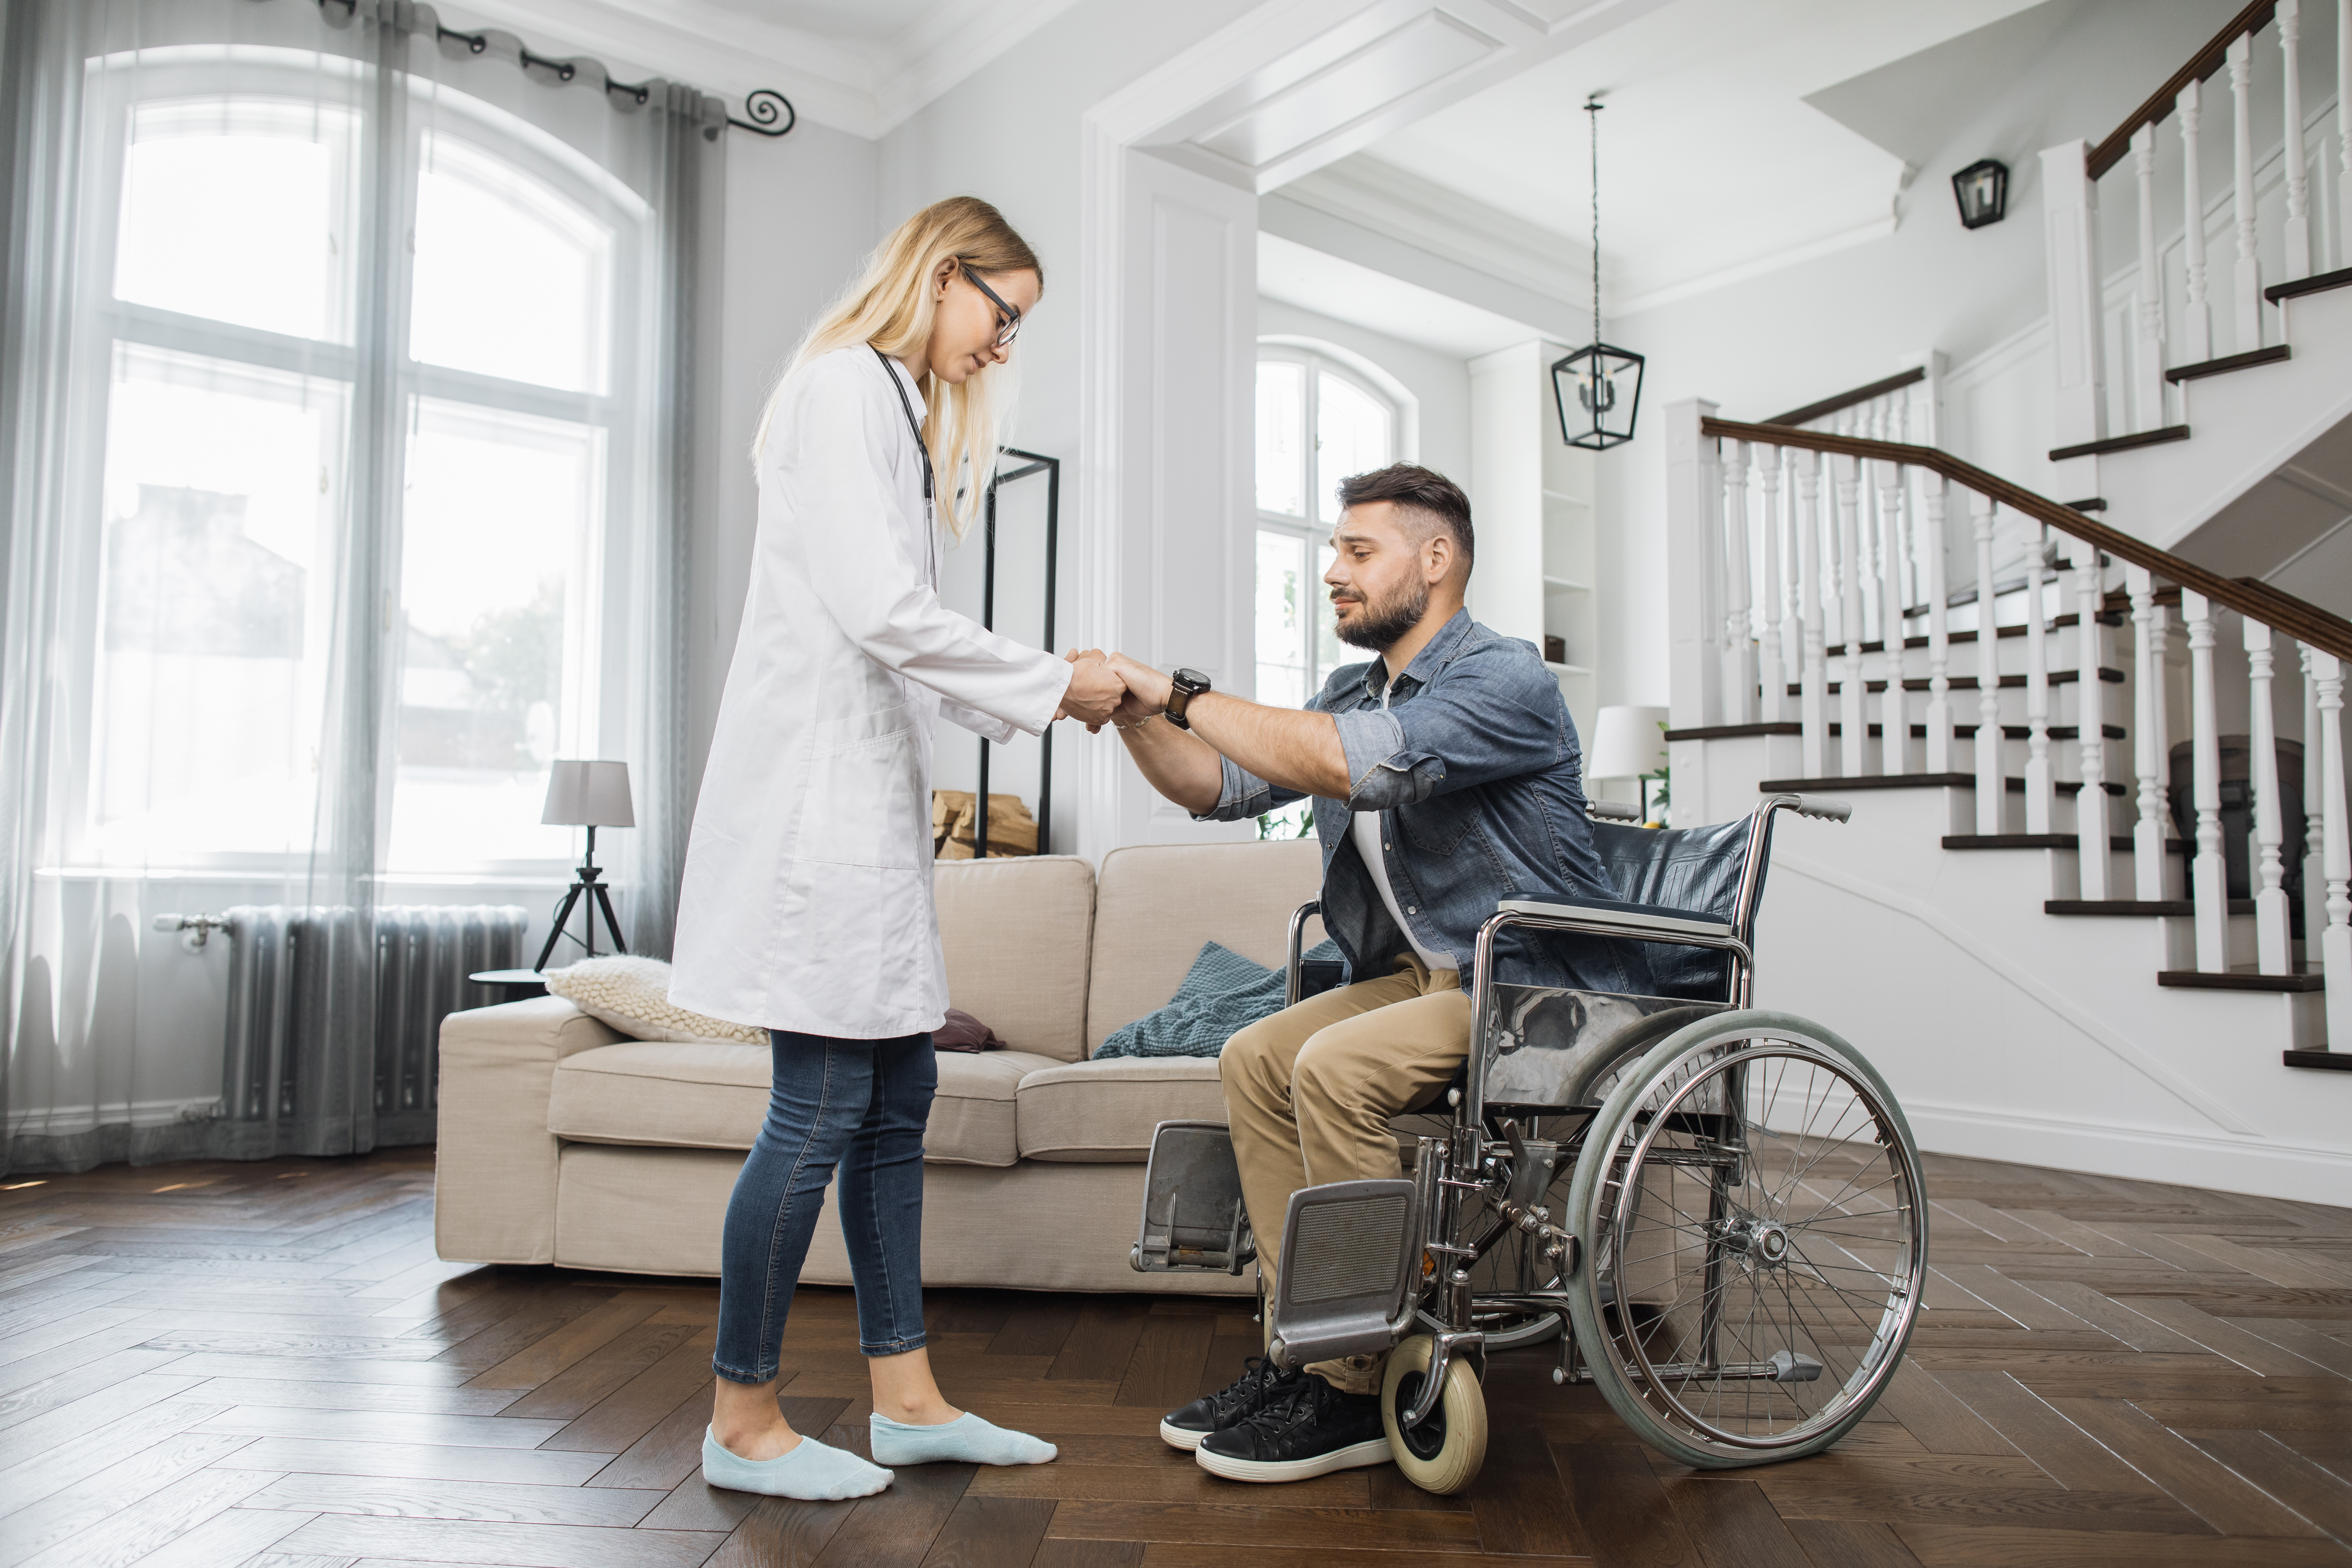 Les progrès de la technologie médicale permettent à des patients paraplégiques de quitter leur fauteuil roulant. © sofiko14, Adobe Stock